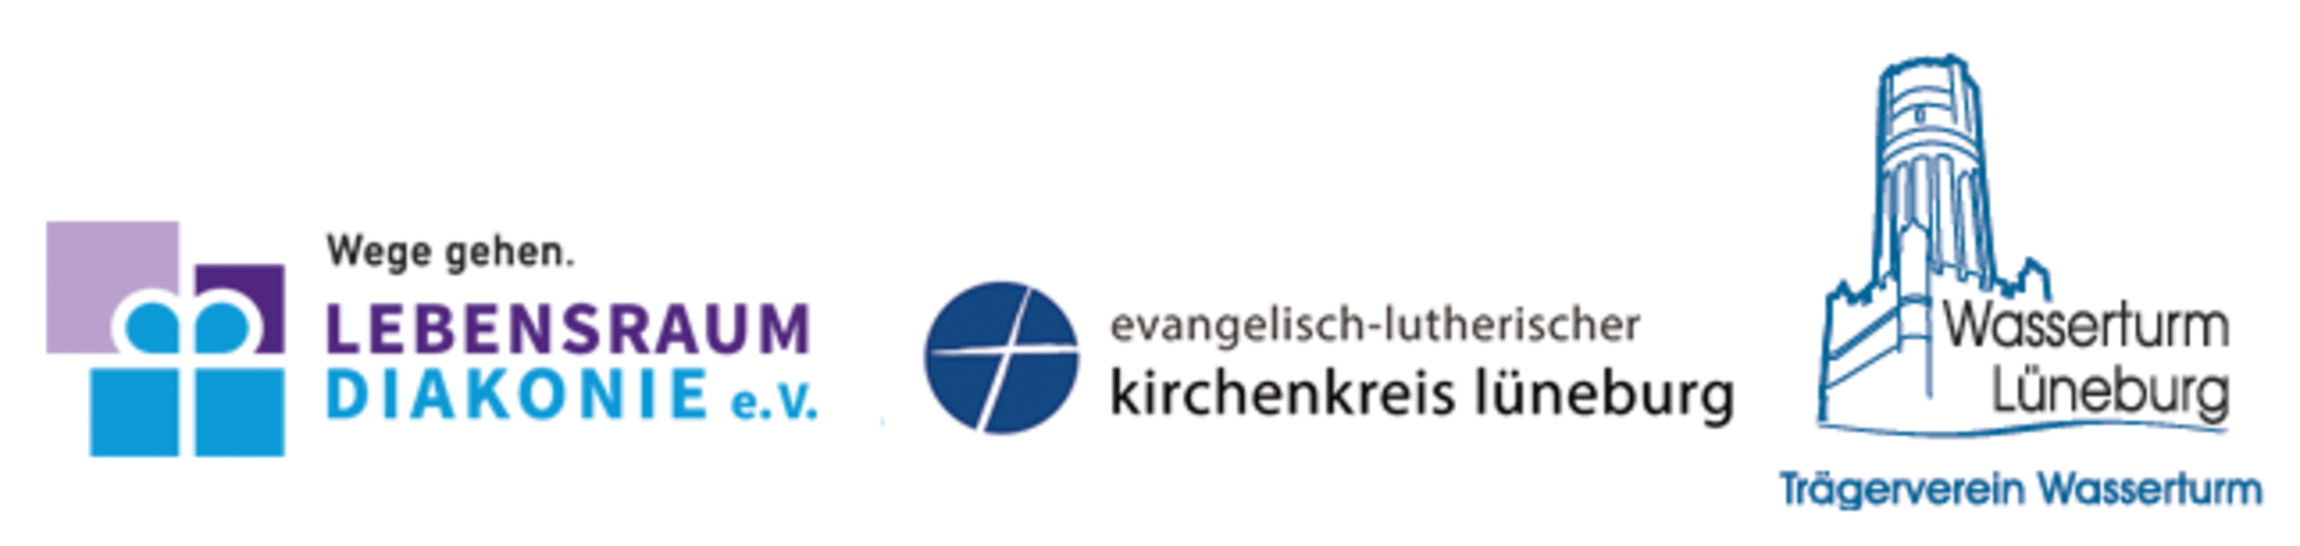 logos-wichernkranzteam-2018